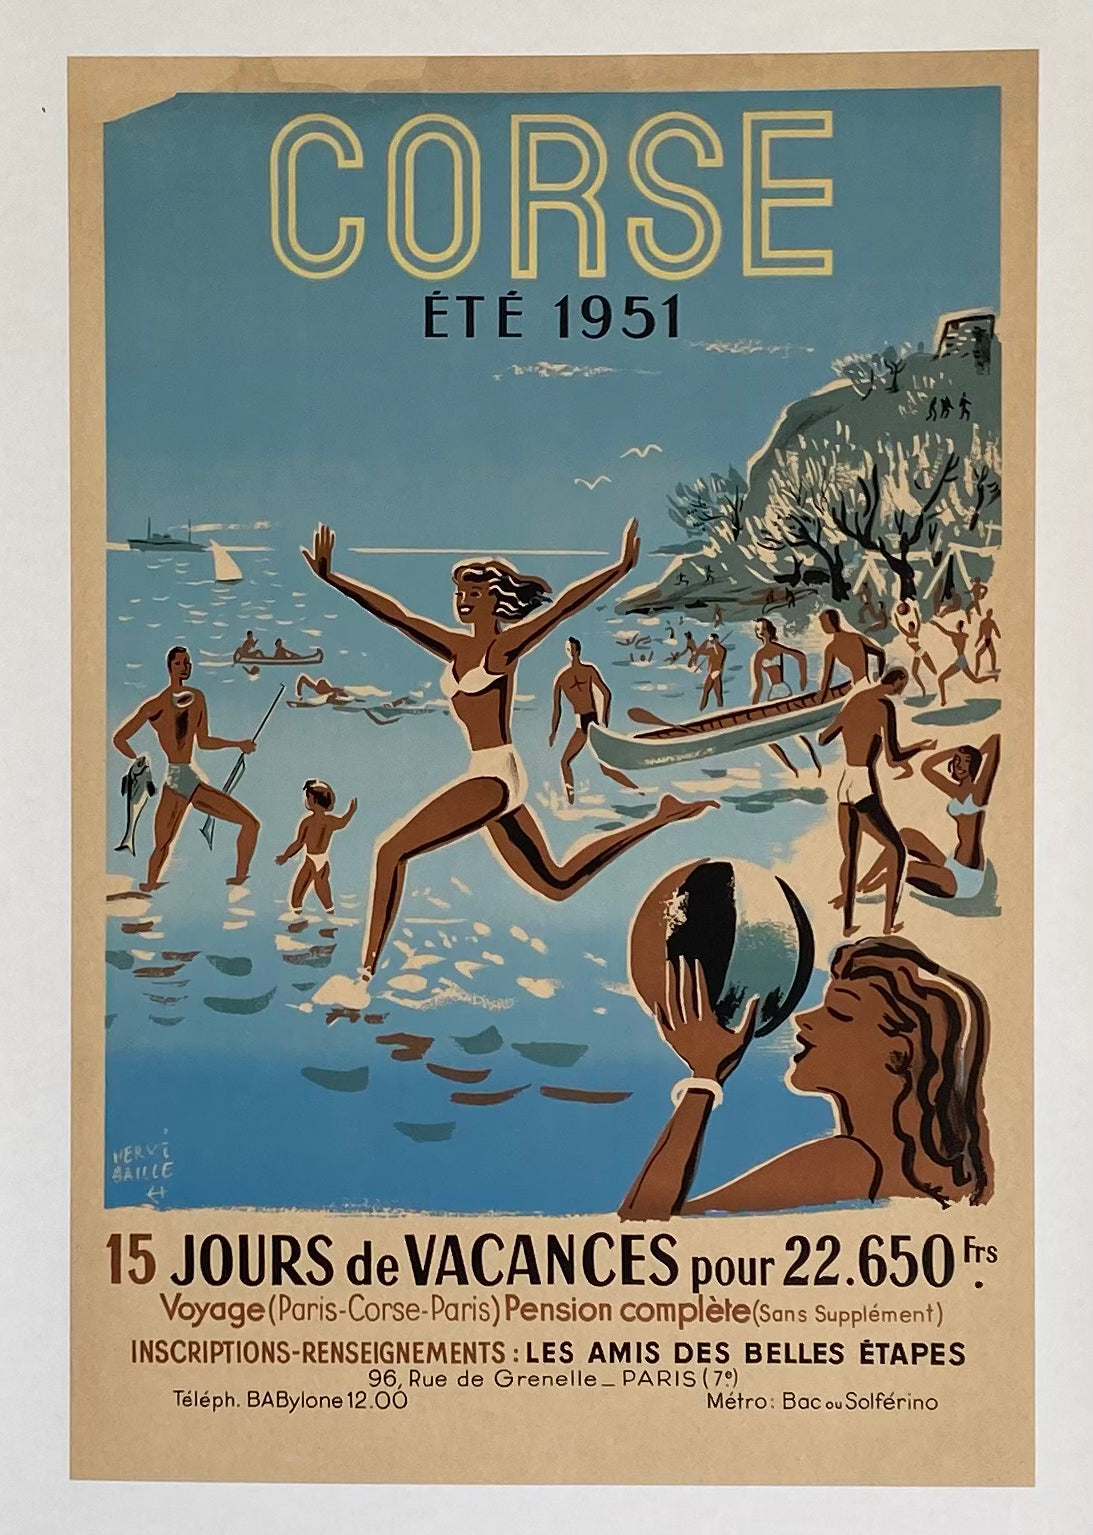 Affiche Lithographique  Corse été 1951 par Hervé Baille  15 jours de vacances pour 22650 franc…